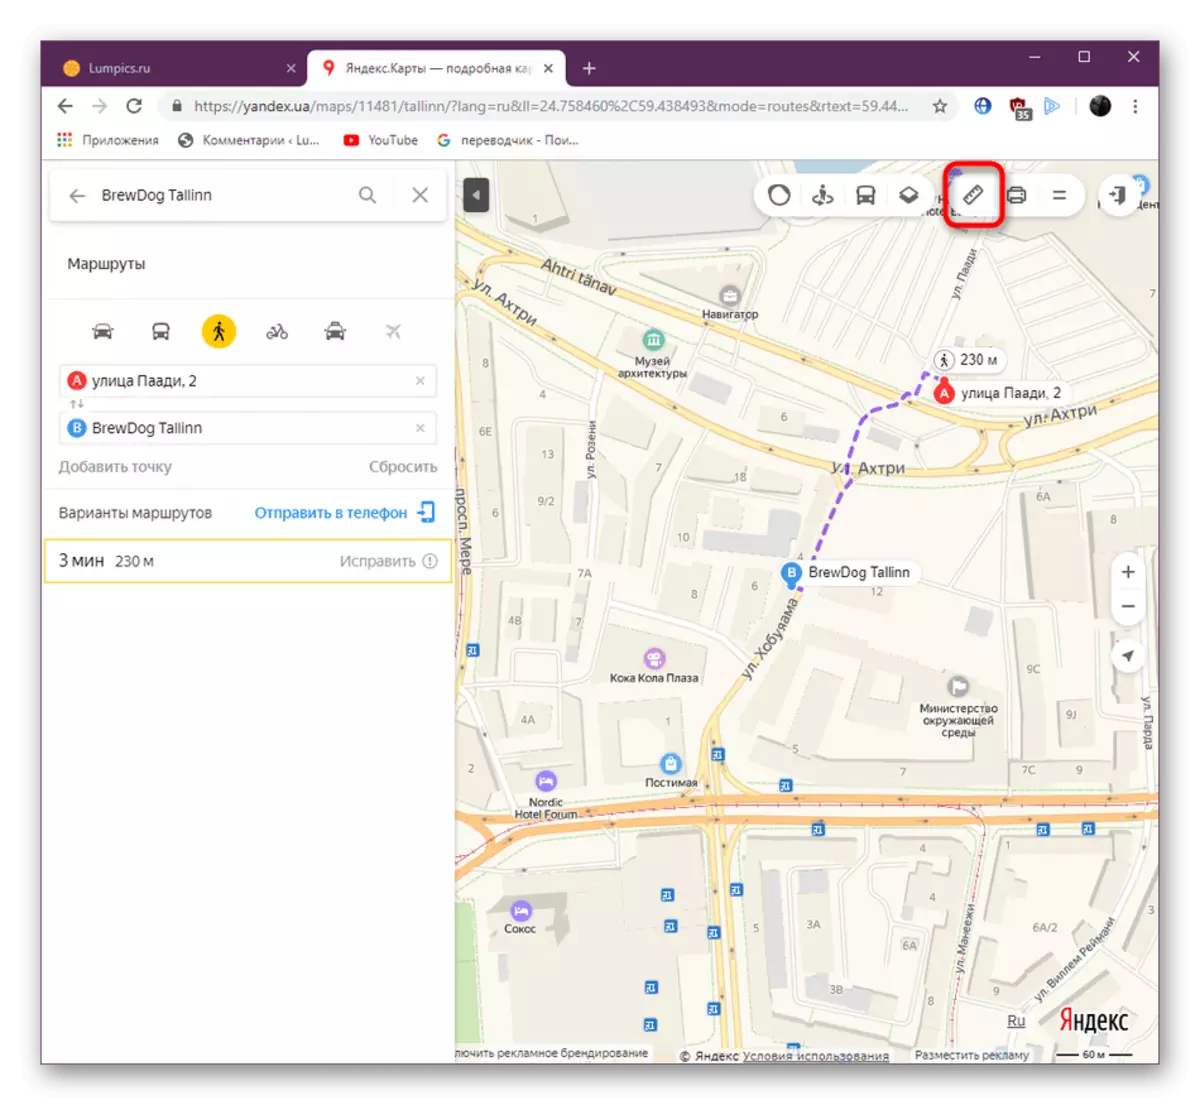 تبدیل خط کش ابزار در وب سایت Yandex.Maps